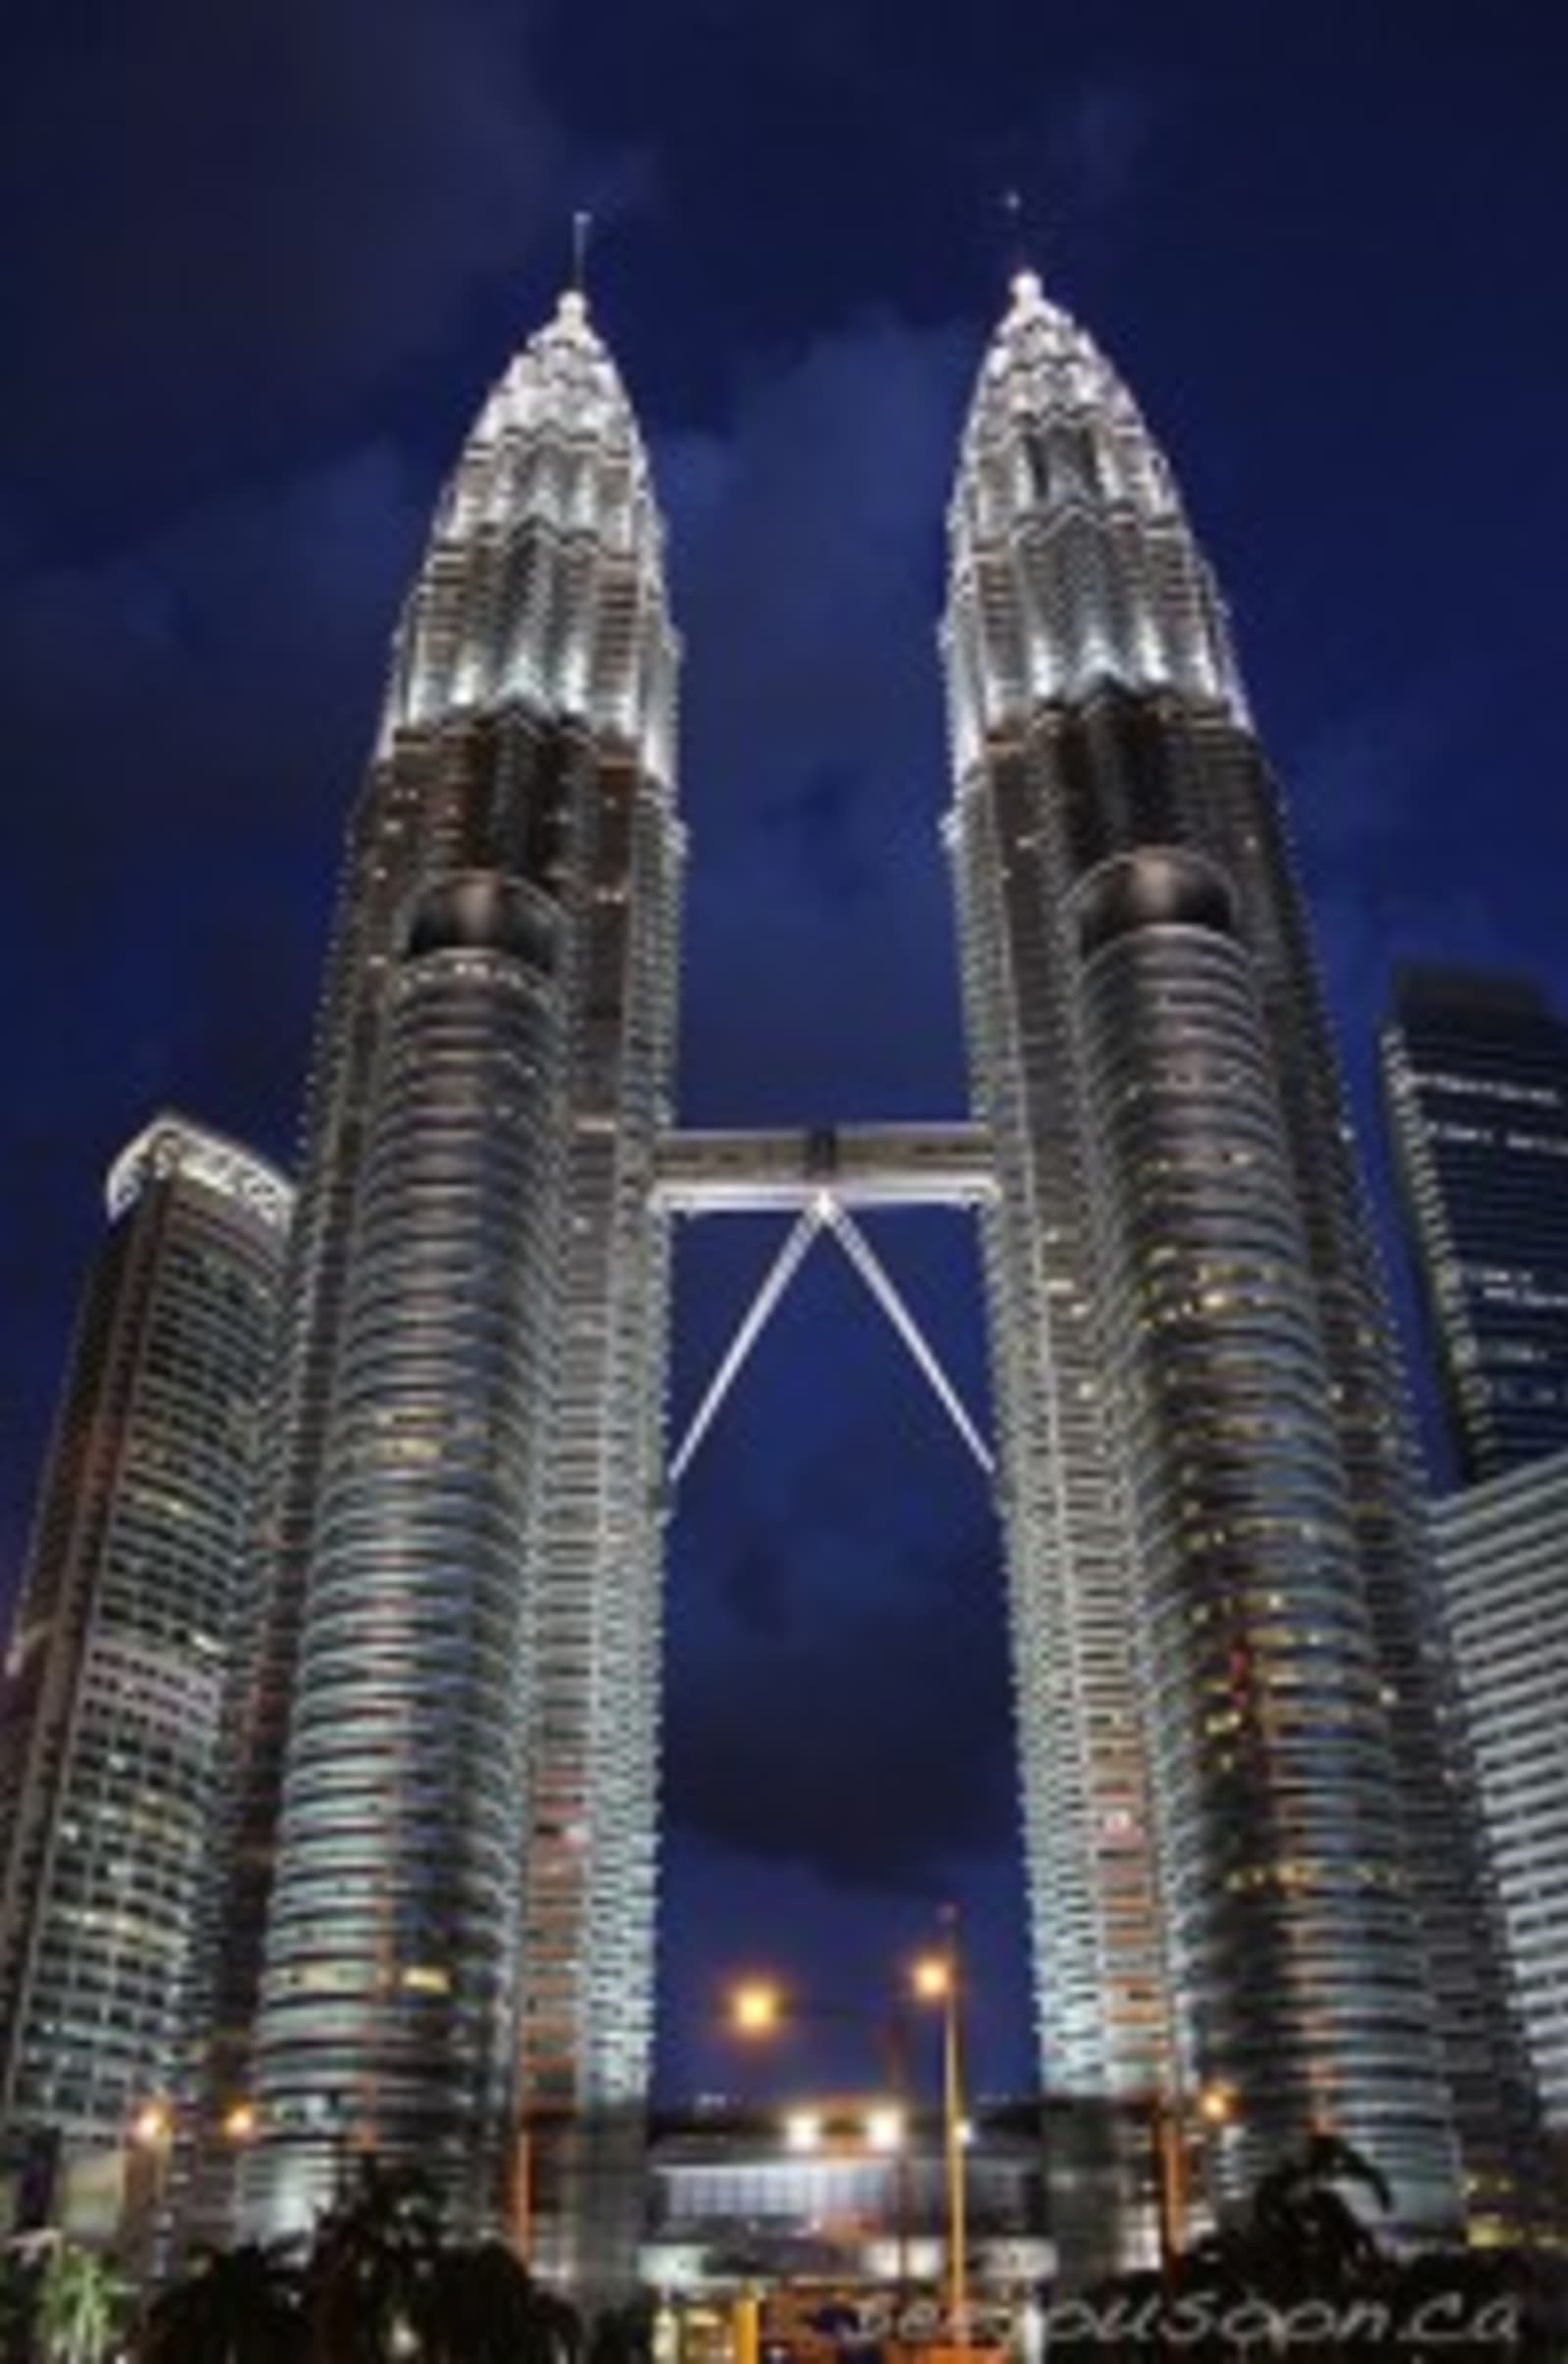 Petronas towers in Kuala Lumpur at night-time